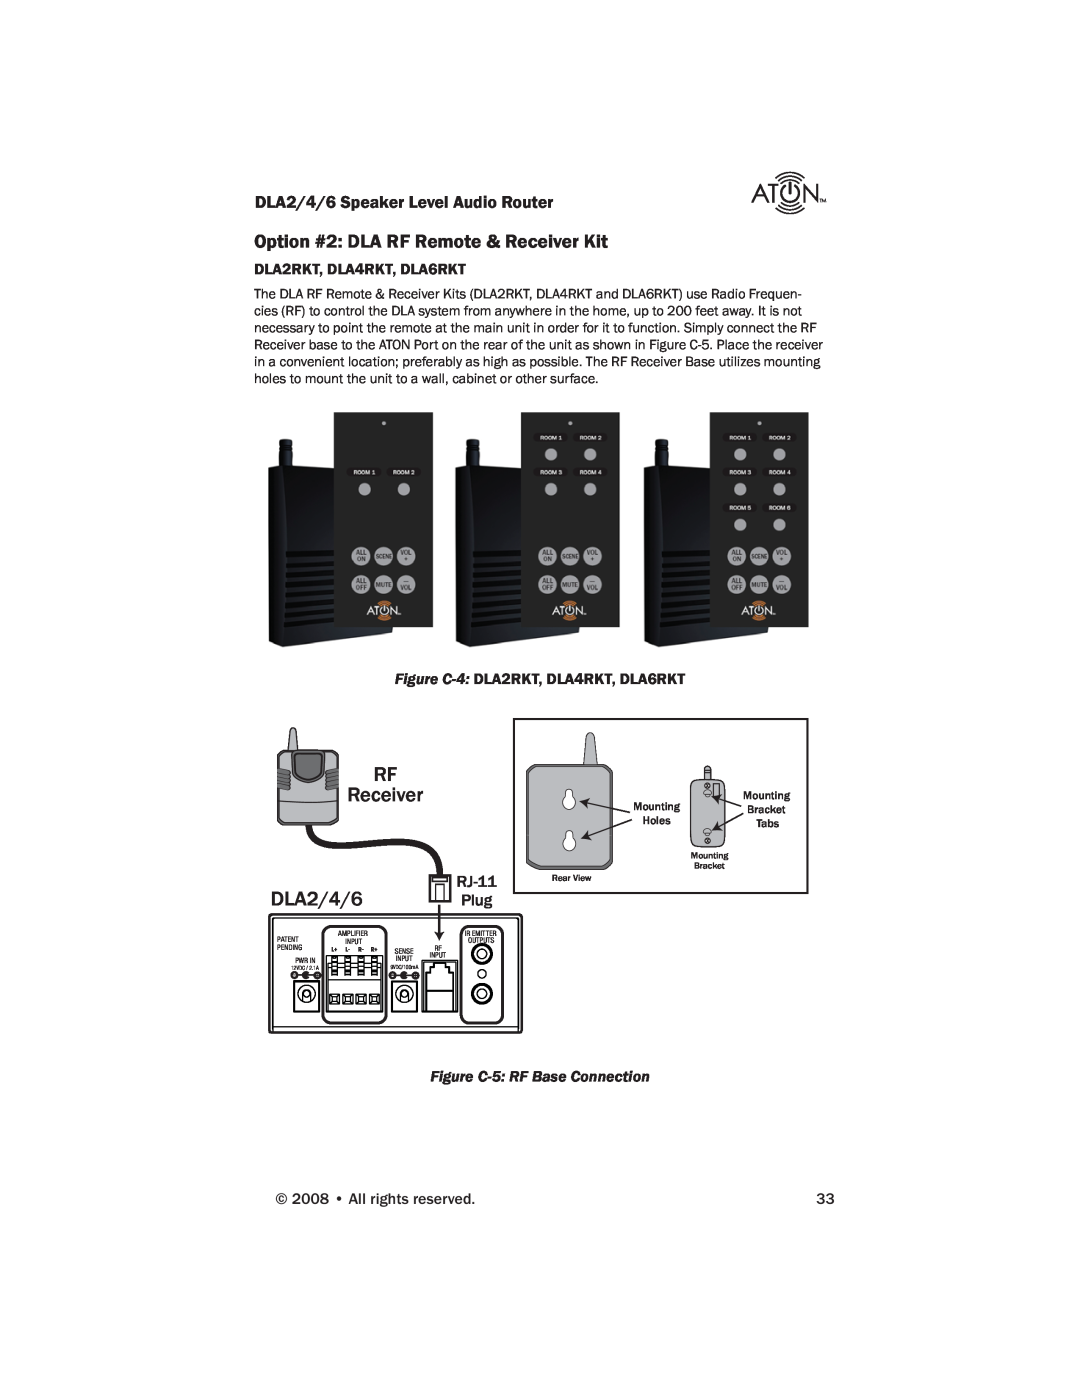 ATON DLA6, DLA4 manual RF Receiver, DLA2/4/6 Plug, Option #2 DLA RF Remote & Receiver Kit, Figure C-5 RF Base Connection 